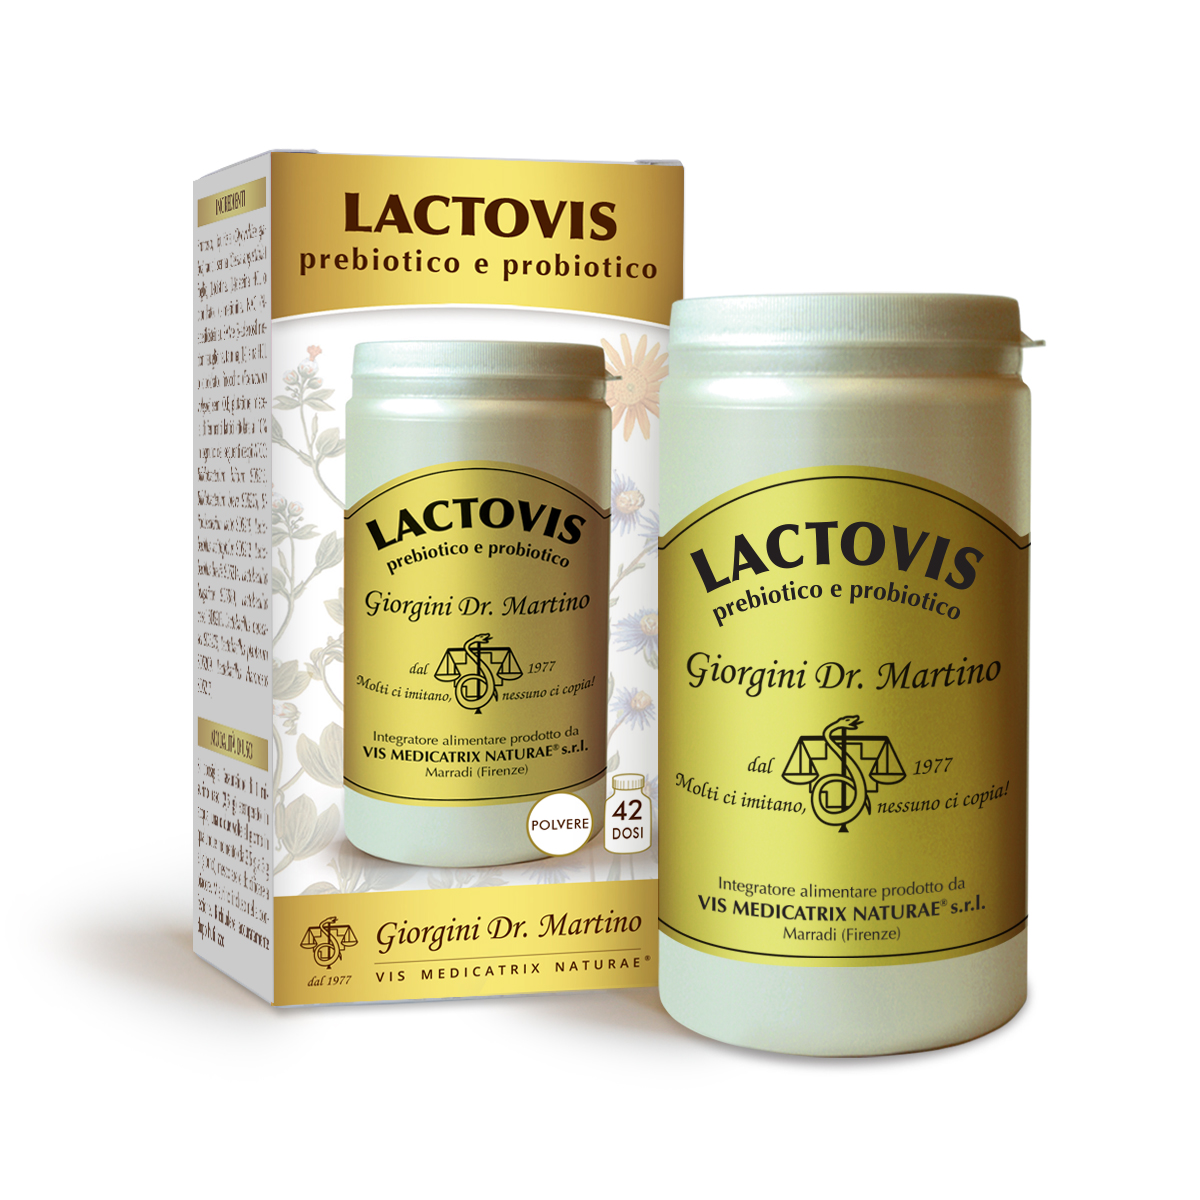 LACTOVIS Prebiotico e Probiotico